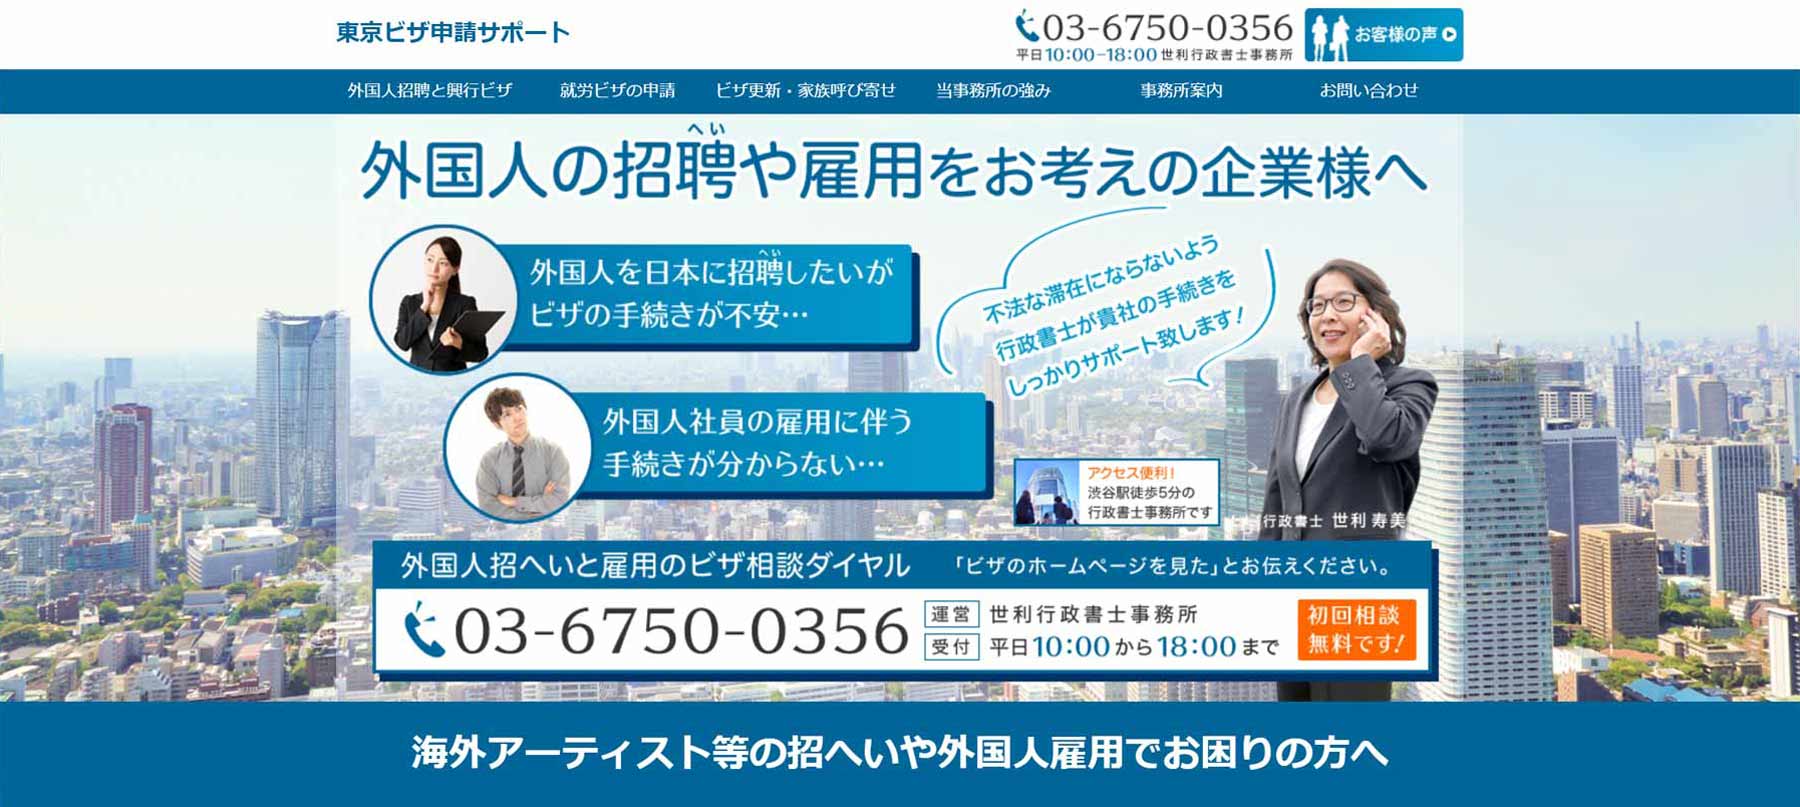 東京ビザ申請サポート公式Webサイト